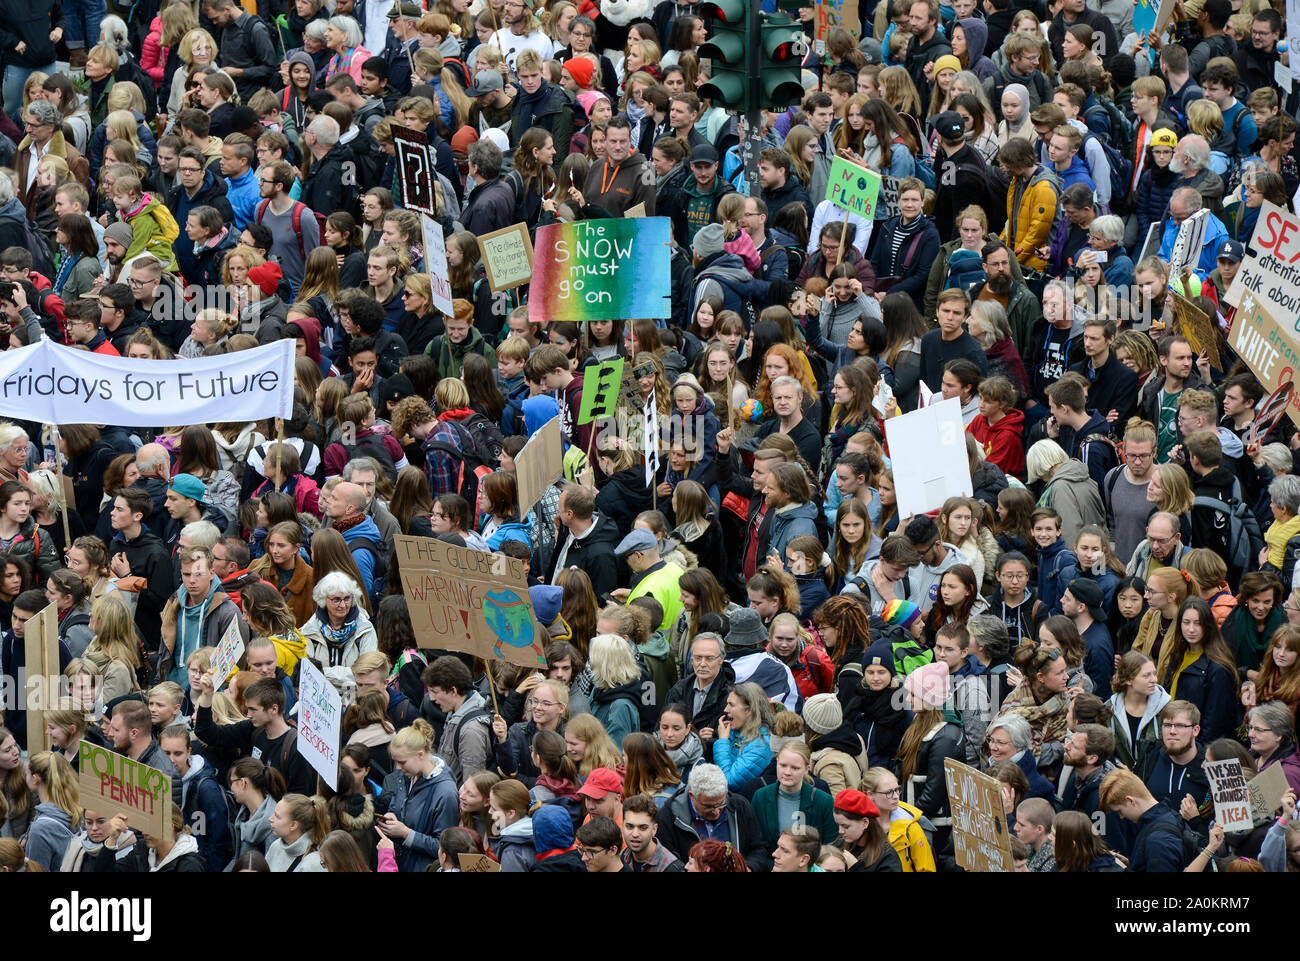 La ciudad de Hamburgo, Alemania, el viernes, el clima para el futuro movimiento de alumnos para la protección del clima y la protección del medio ambiente, escuela huelga y manifestación con 70.000 manifestantes en Jungfernstieg 20. Sep 2019, Skolstrejk för klimatet fue iniciado por alumno sueca Greta Thunberg en Estocolmo Foto de stock